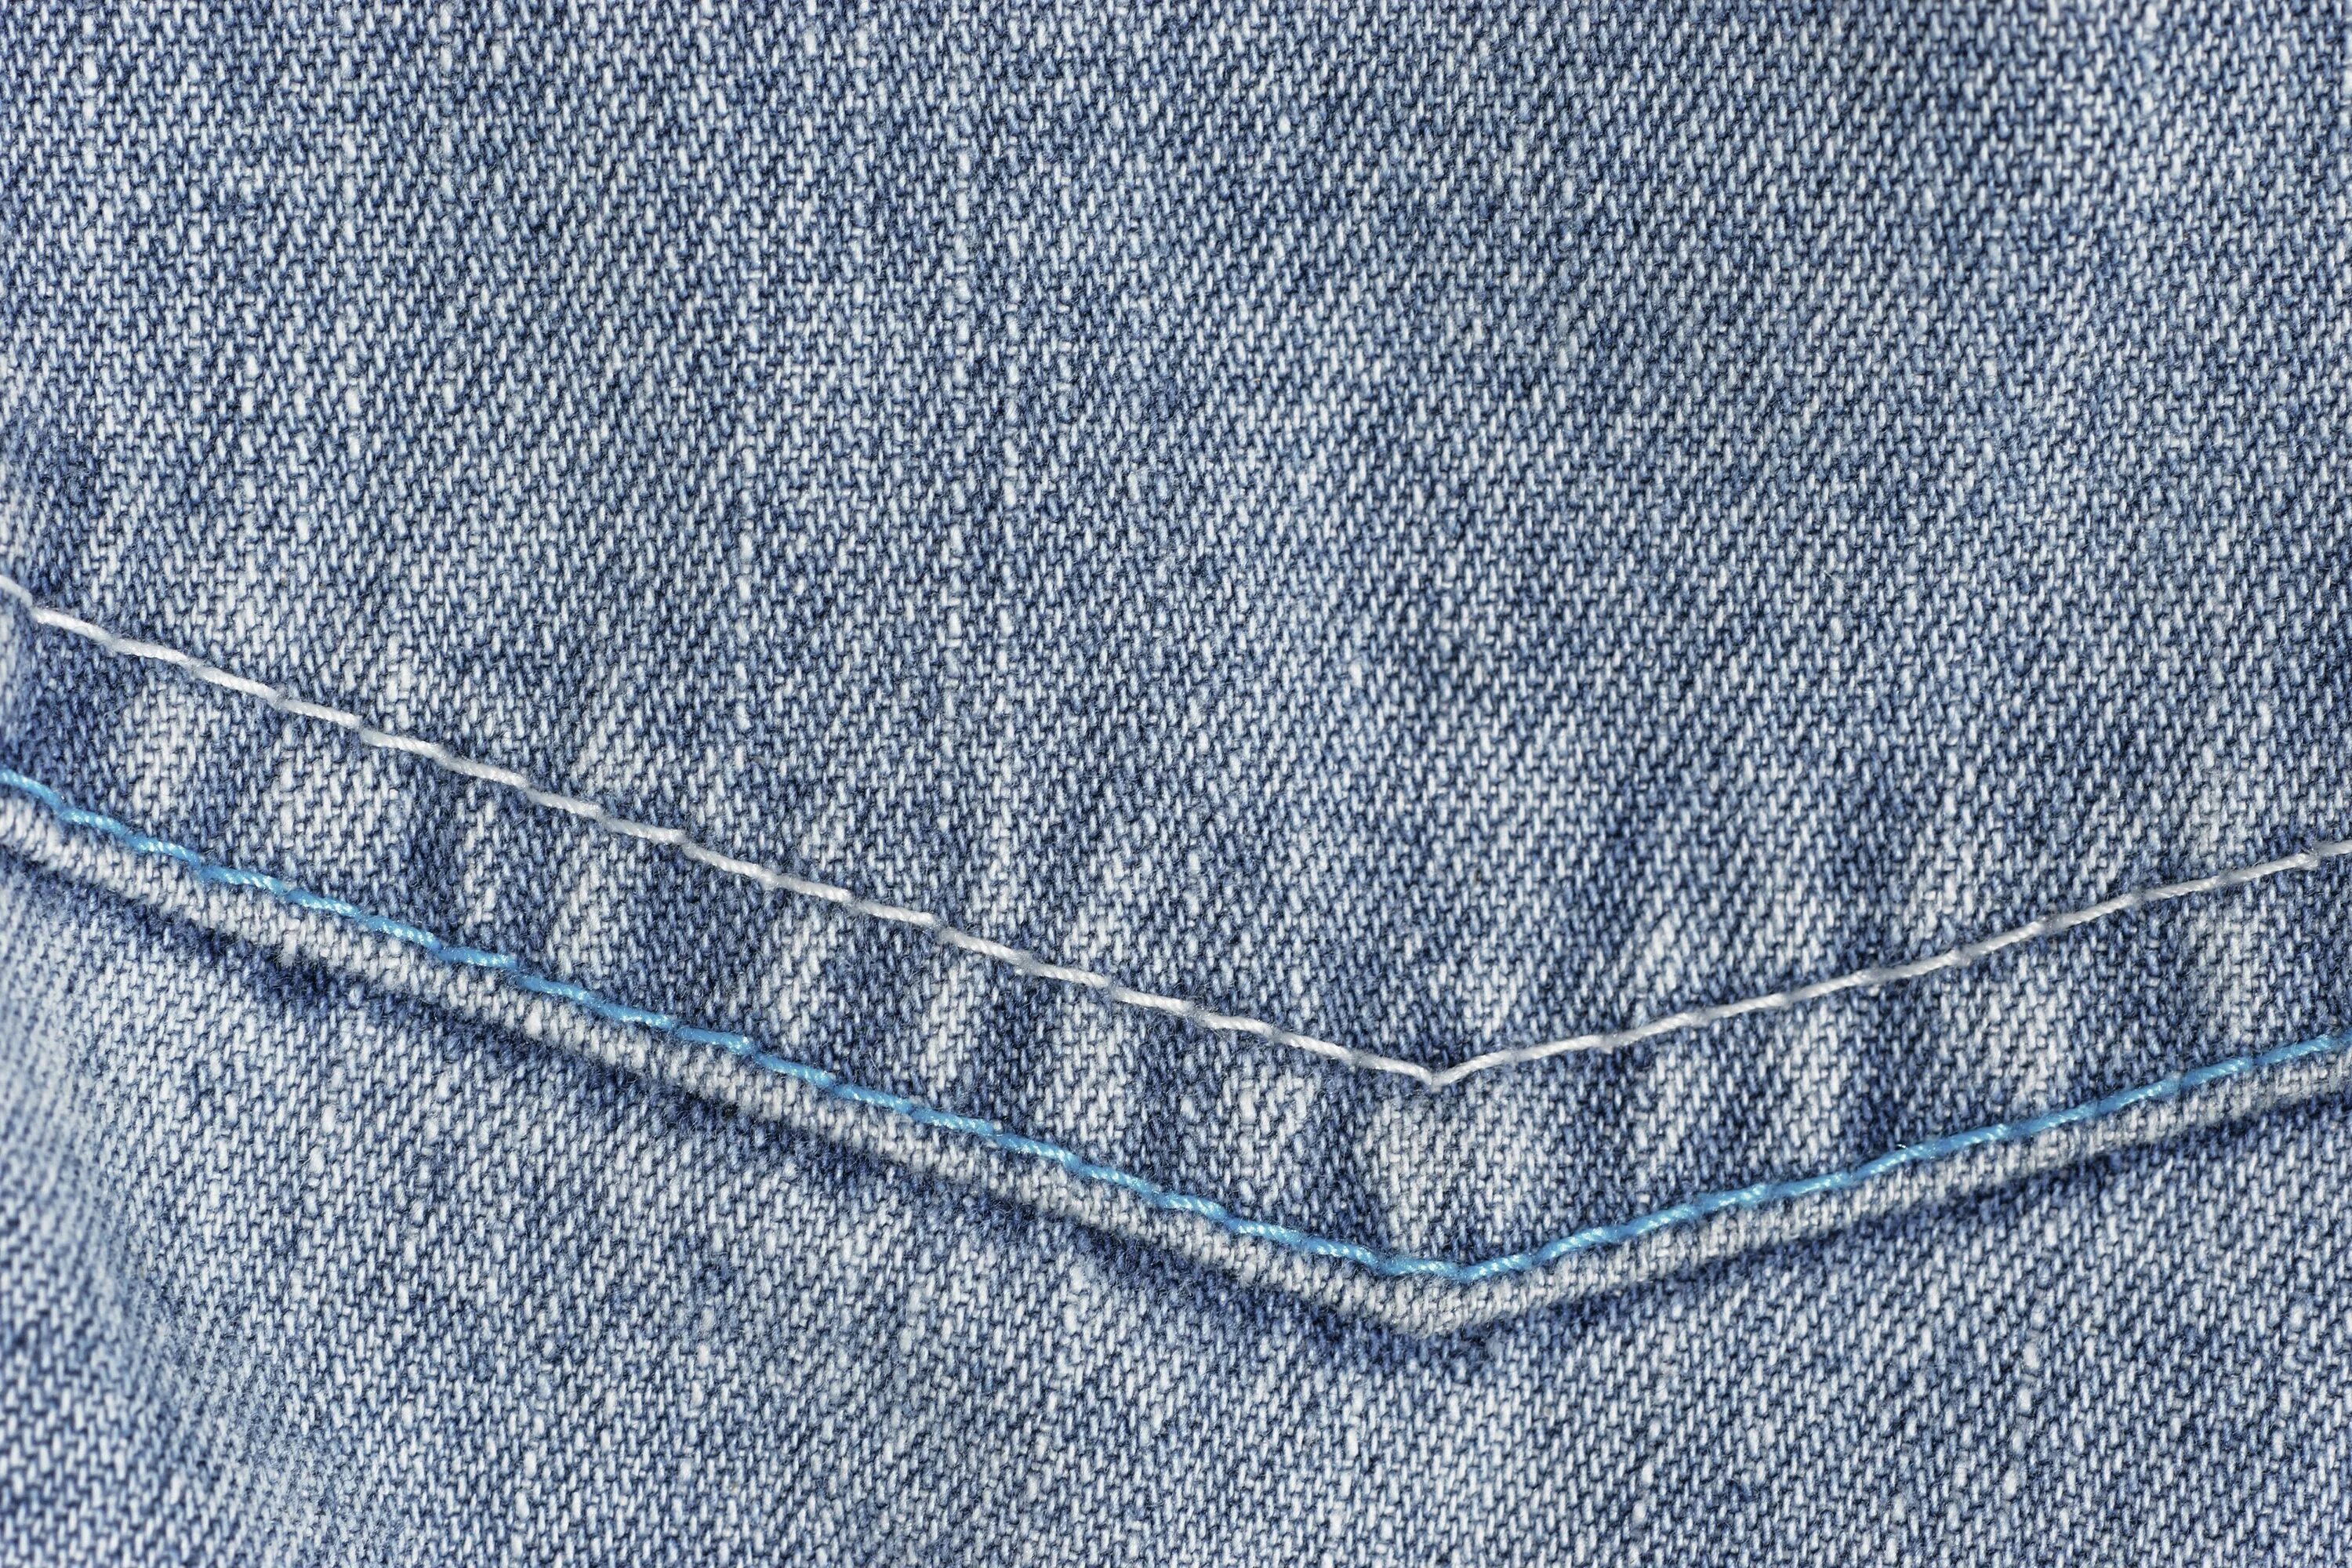 Джинсовая ткань. Материал джинс. Фактура джинсы. Текстура джинсовой ткани.